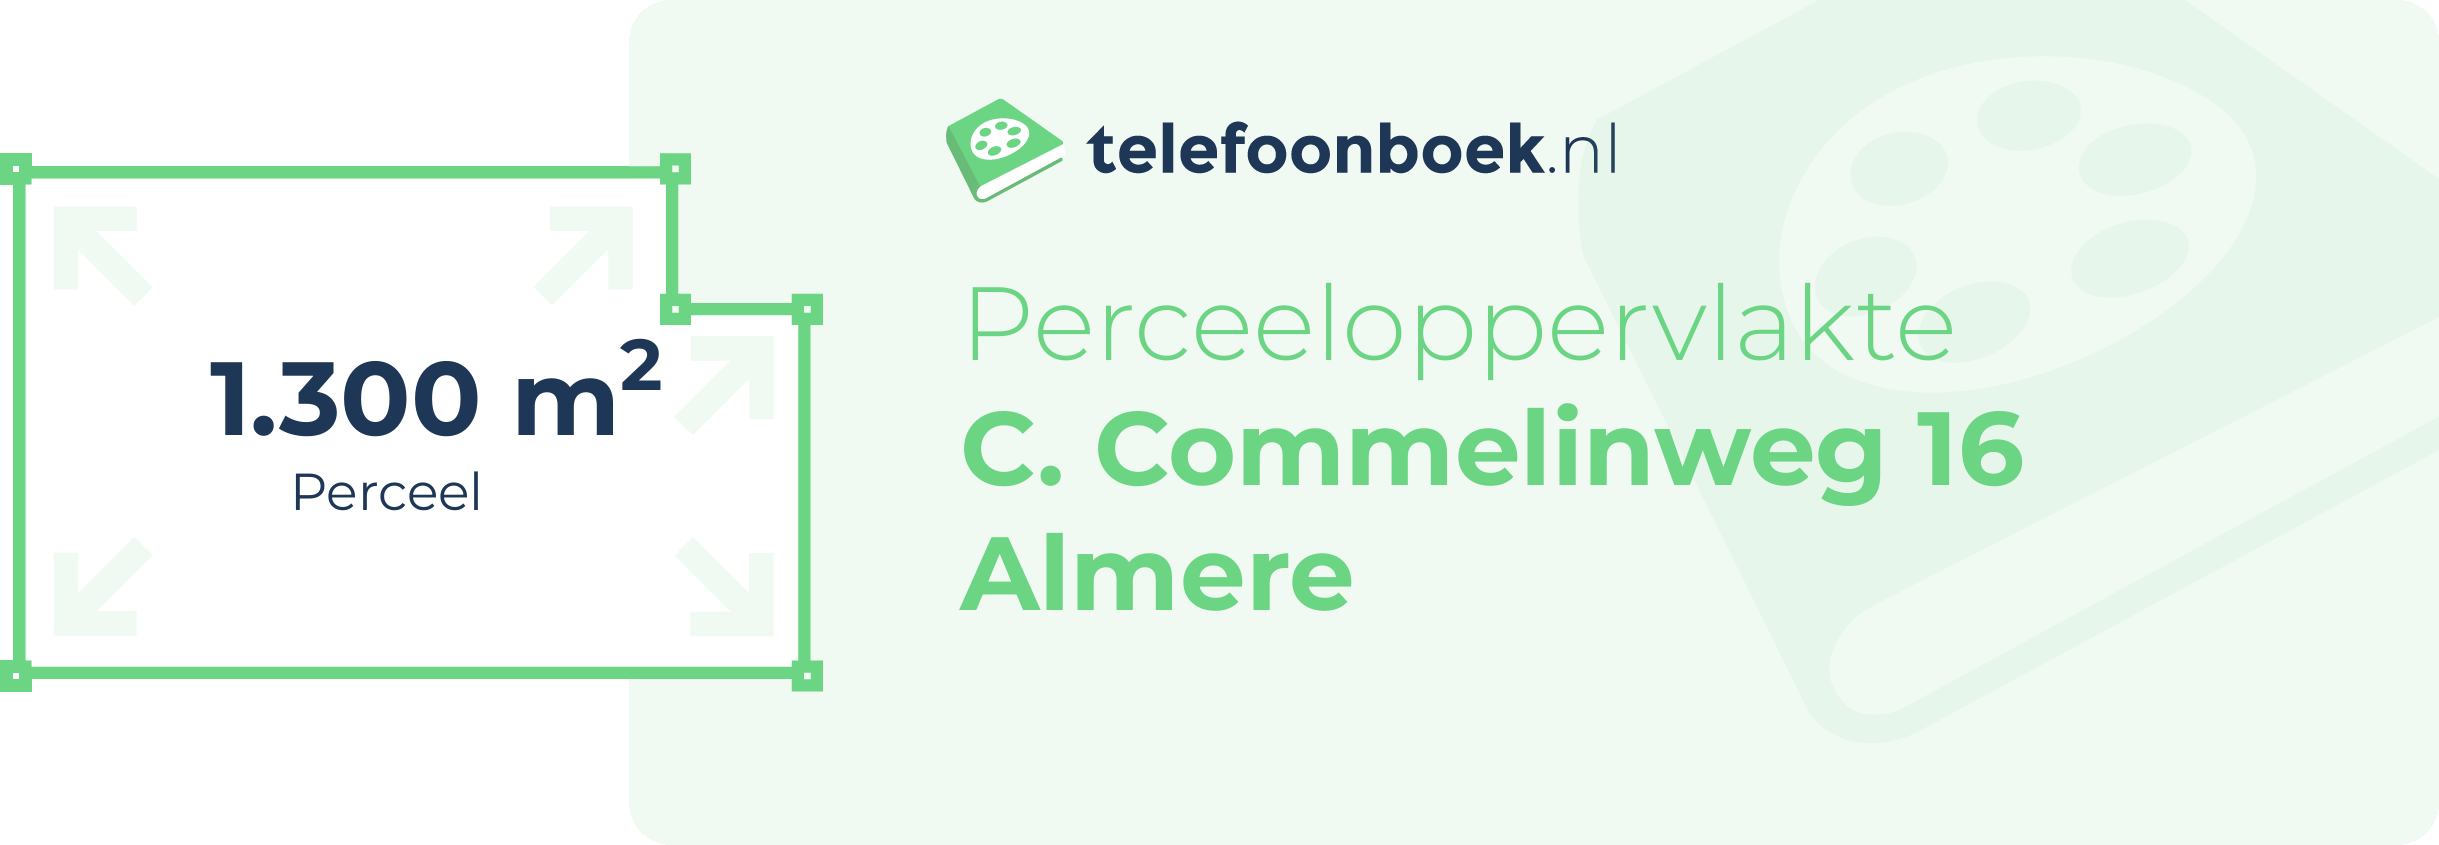 Perceeloppervlakte C. Commelinweg 16 Almere